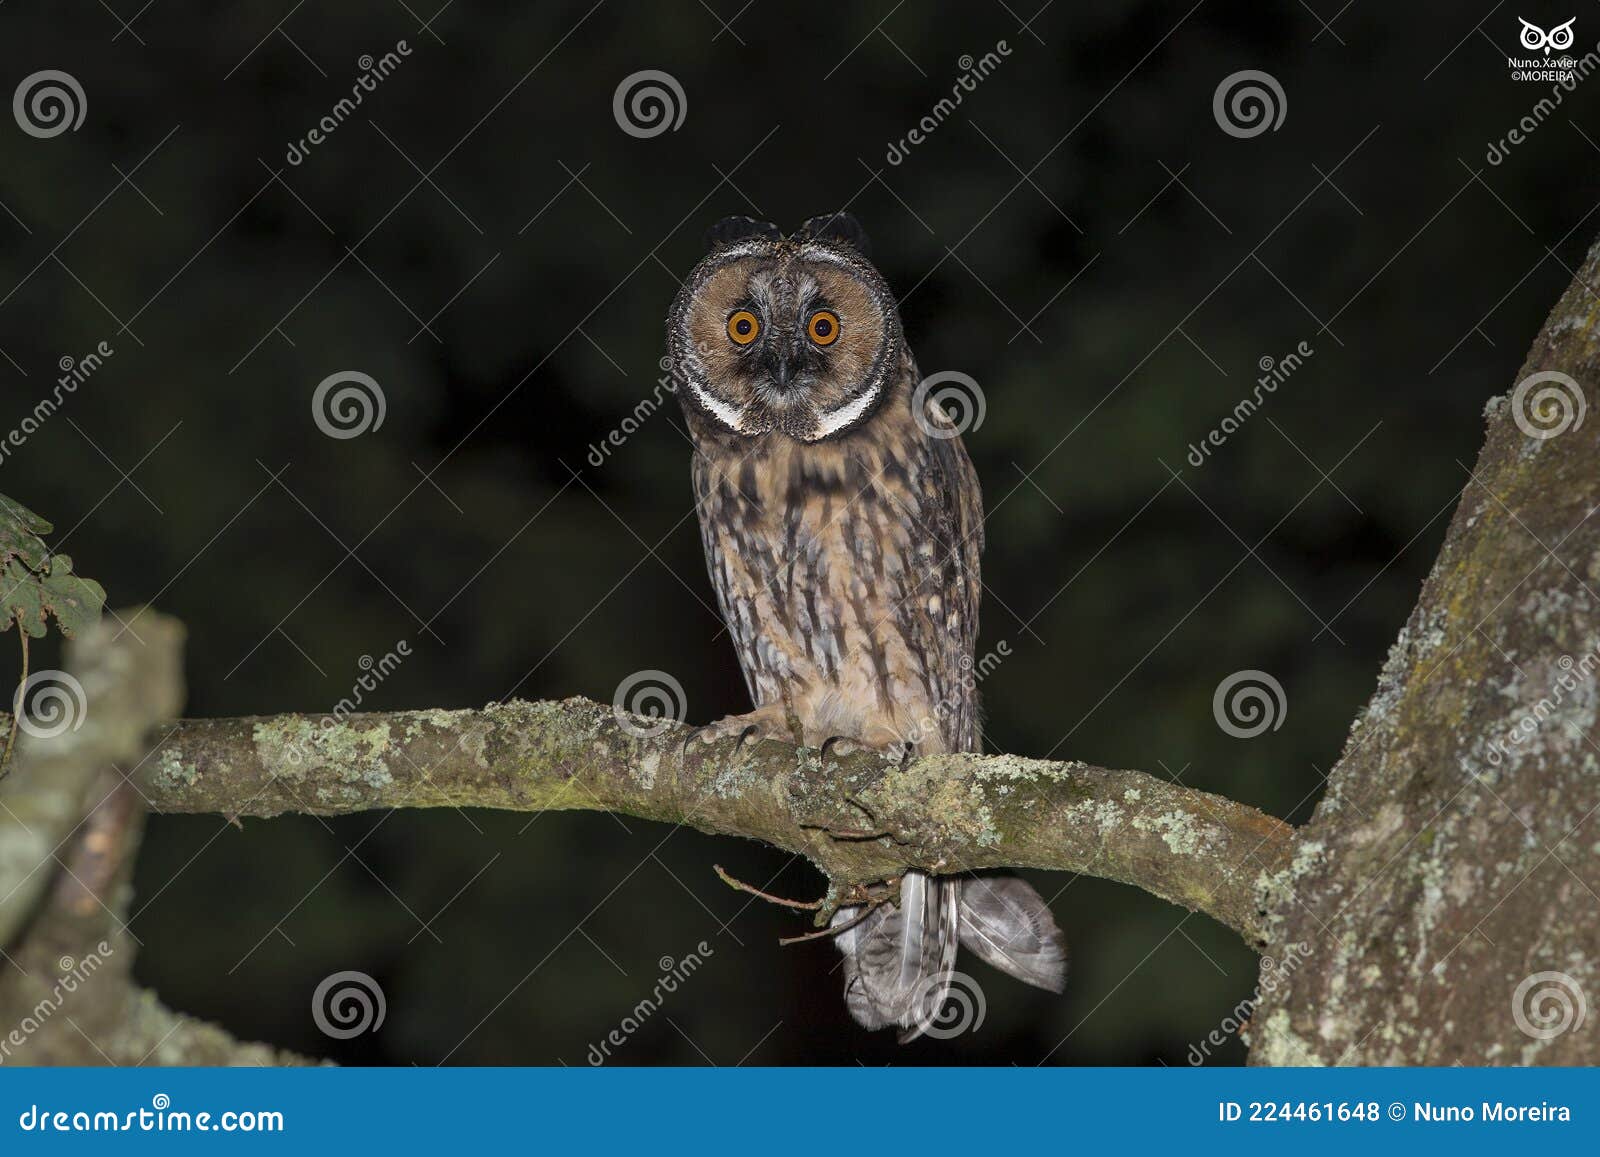 bufo-pequeno, long-eared owlasio otus